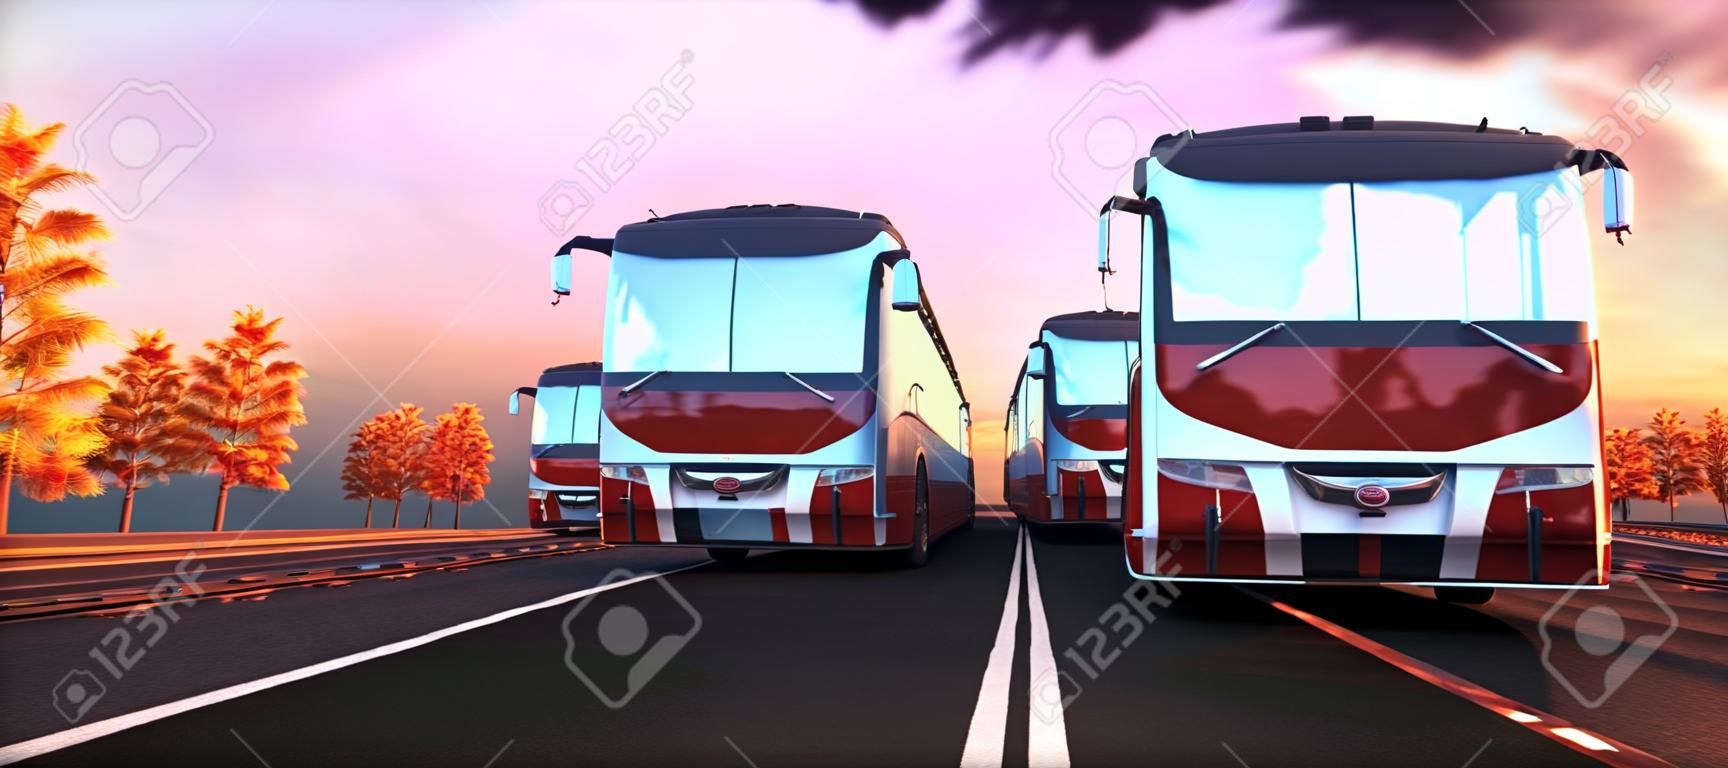 Ilustração 3d do ônibus carregado com malas